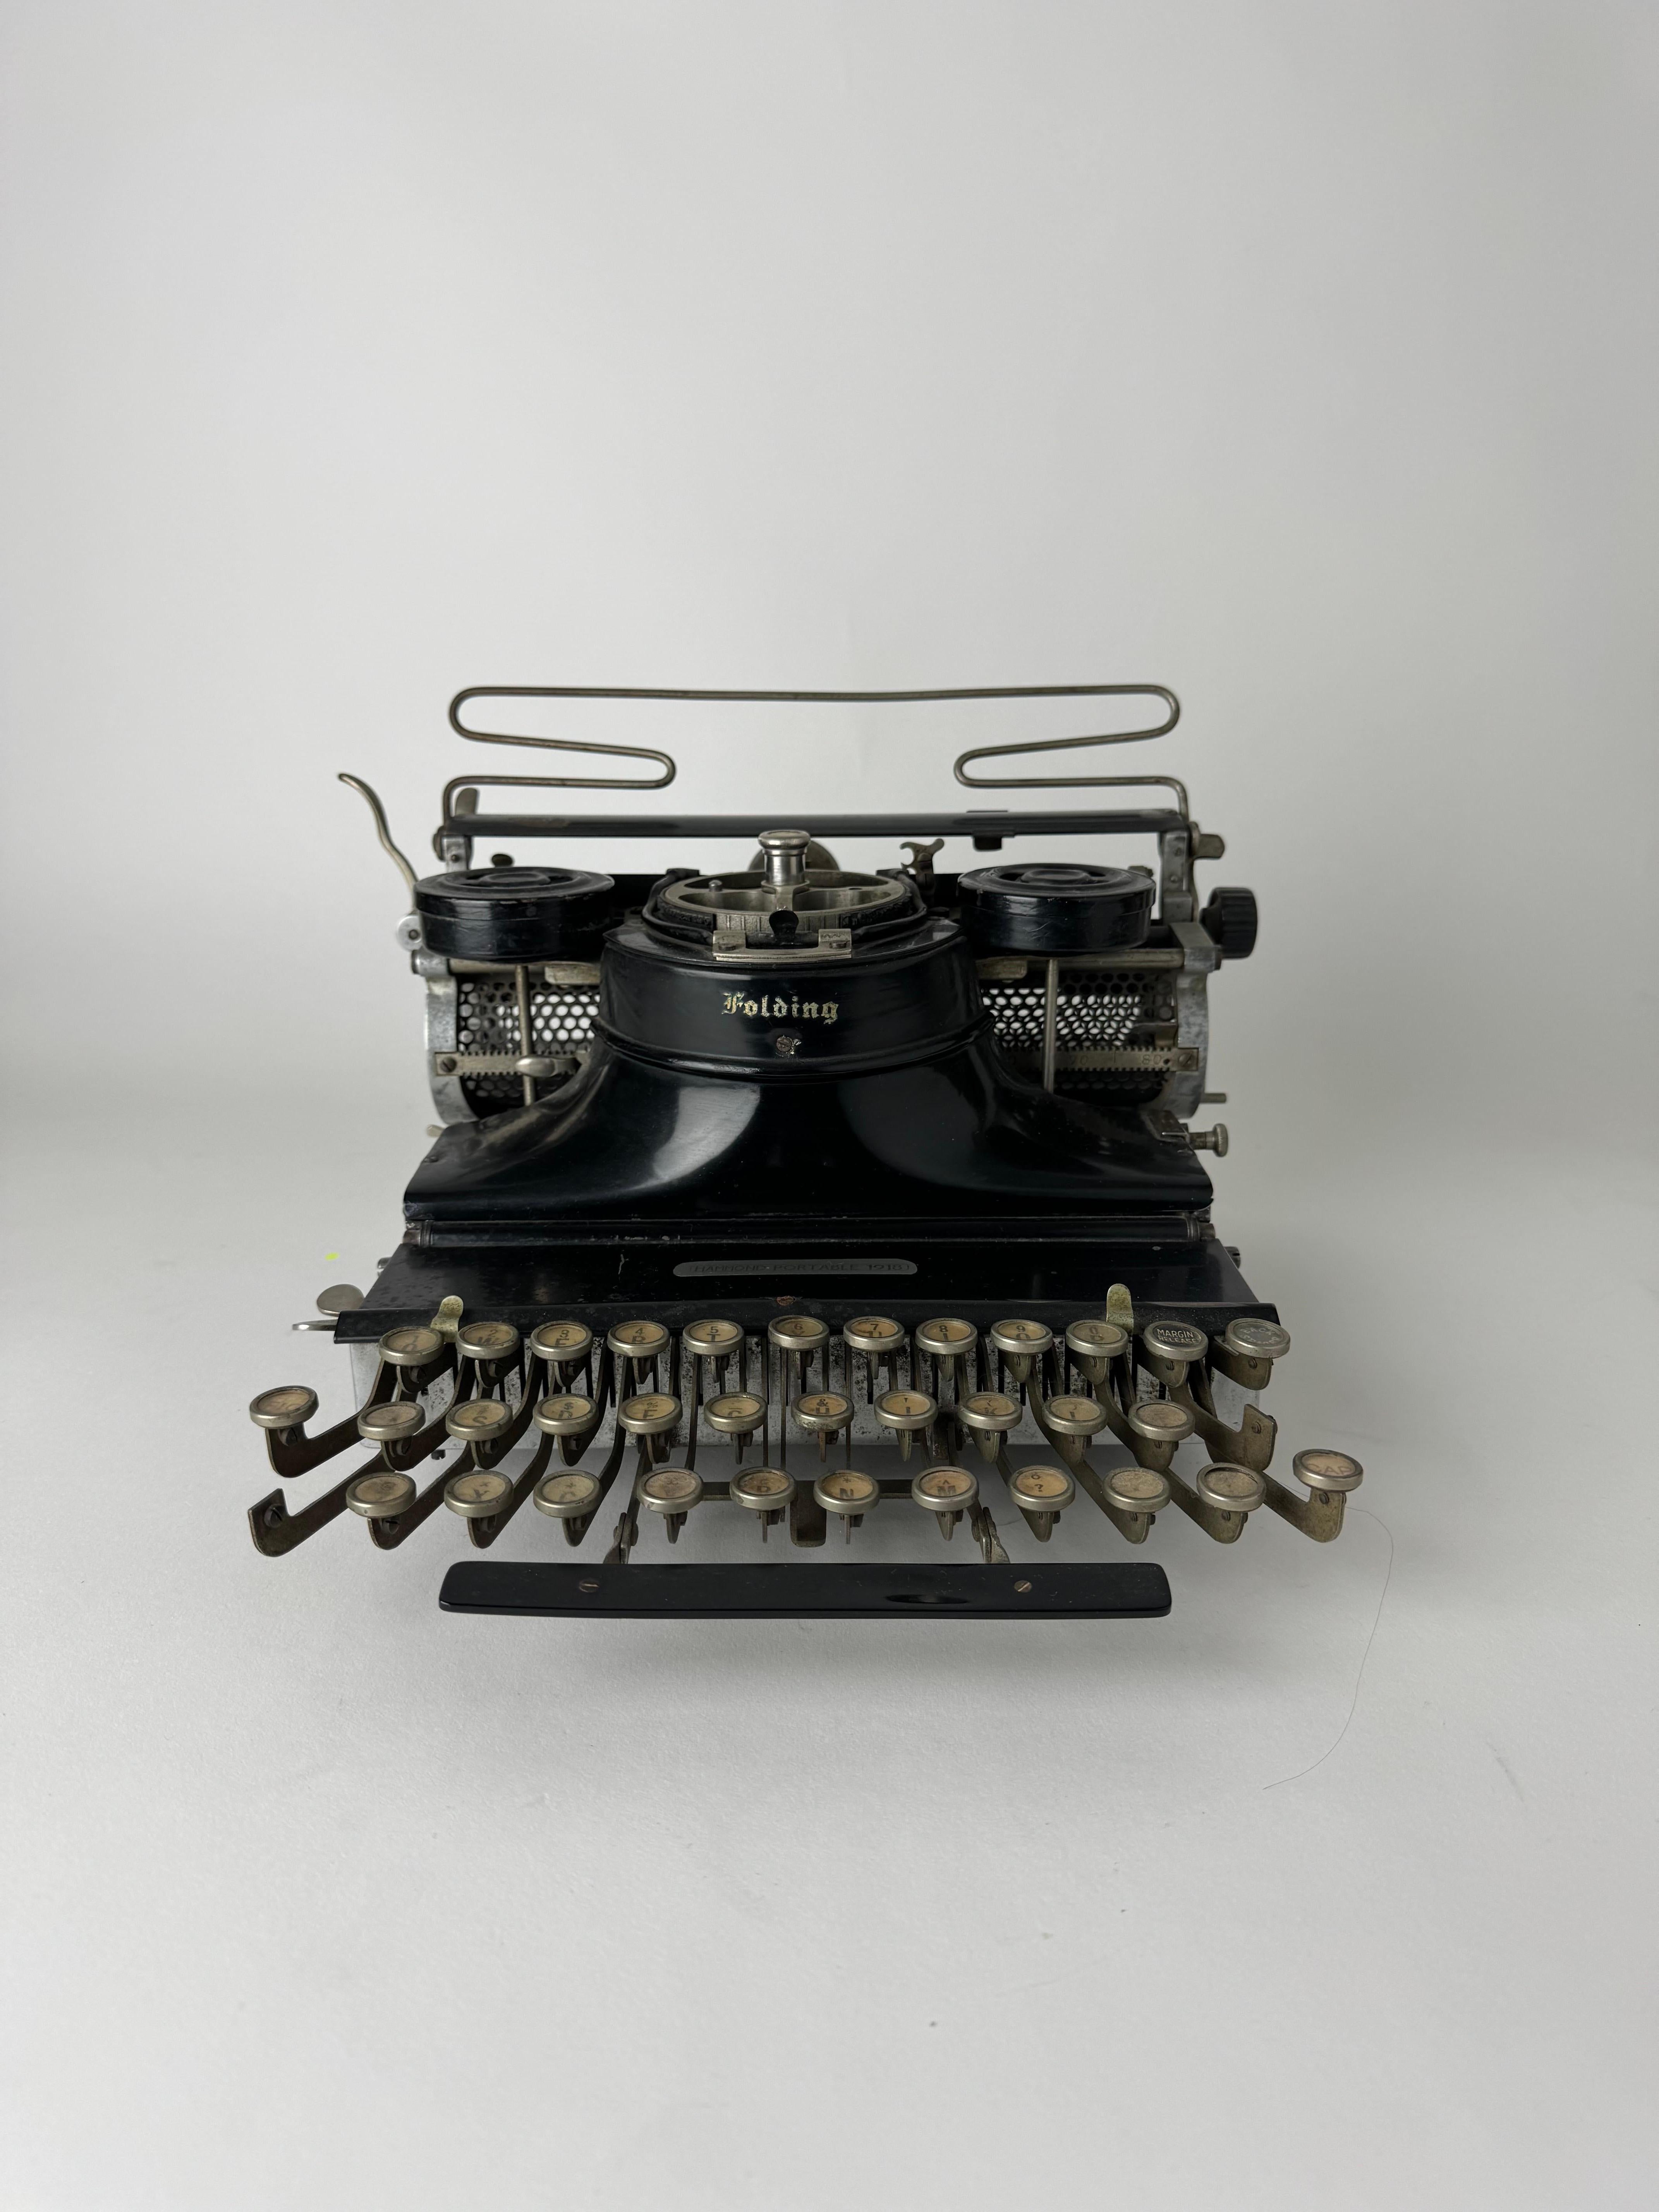 hammond no 12 typewriter